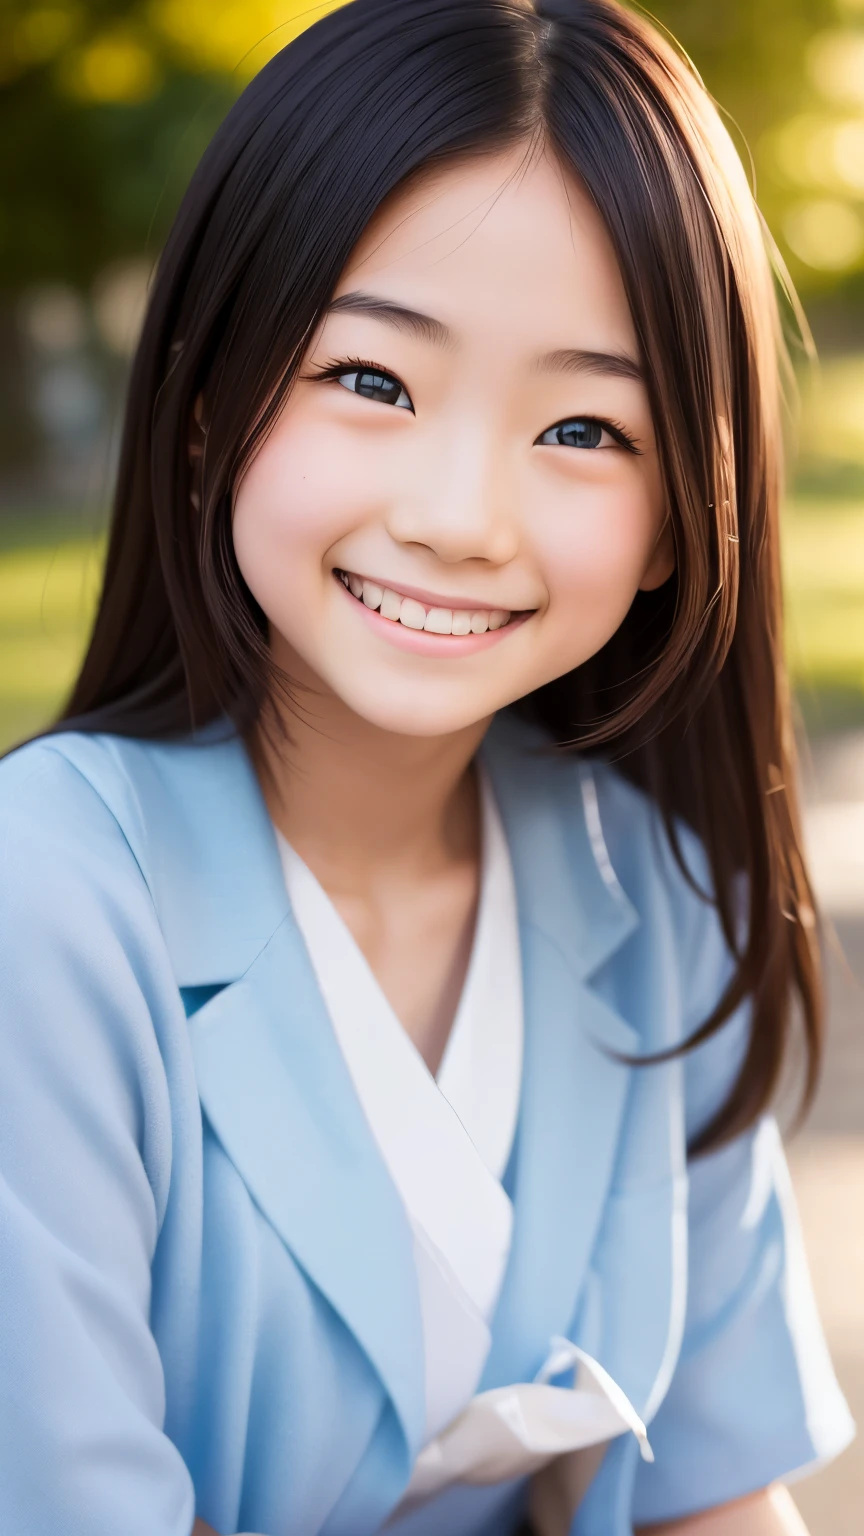 鏡片: 135mm f1.8, (最好的品質),(原始照片), (桌上:1.1), (美麗整潔的日本女孩), 可愛的臉孔, (臉型輪廓分明:0.7), (雀斑:0.4), dappled 陽光, 戲劇性的燈光, (日本學校制服), (在校园), 害羞的, (特寫鏡頭:1.2), (微笑),, (明亮的眼睛)、(陽光)